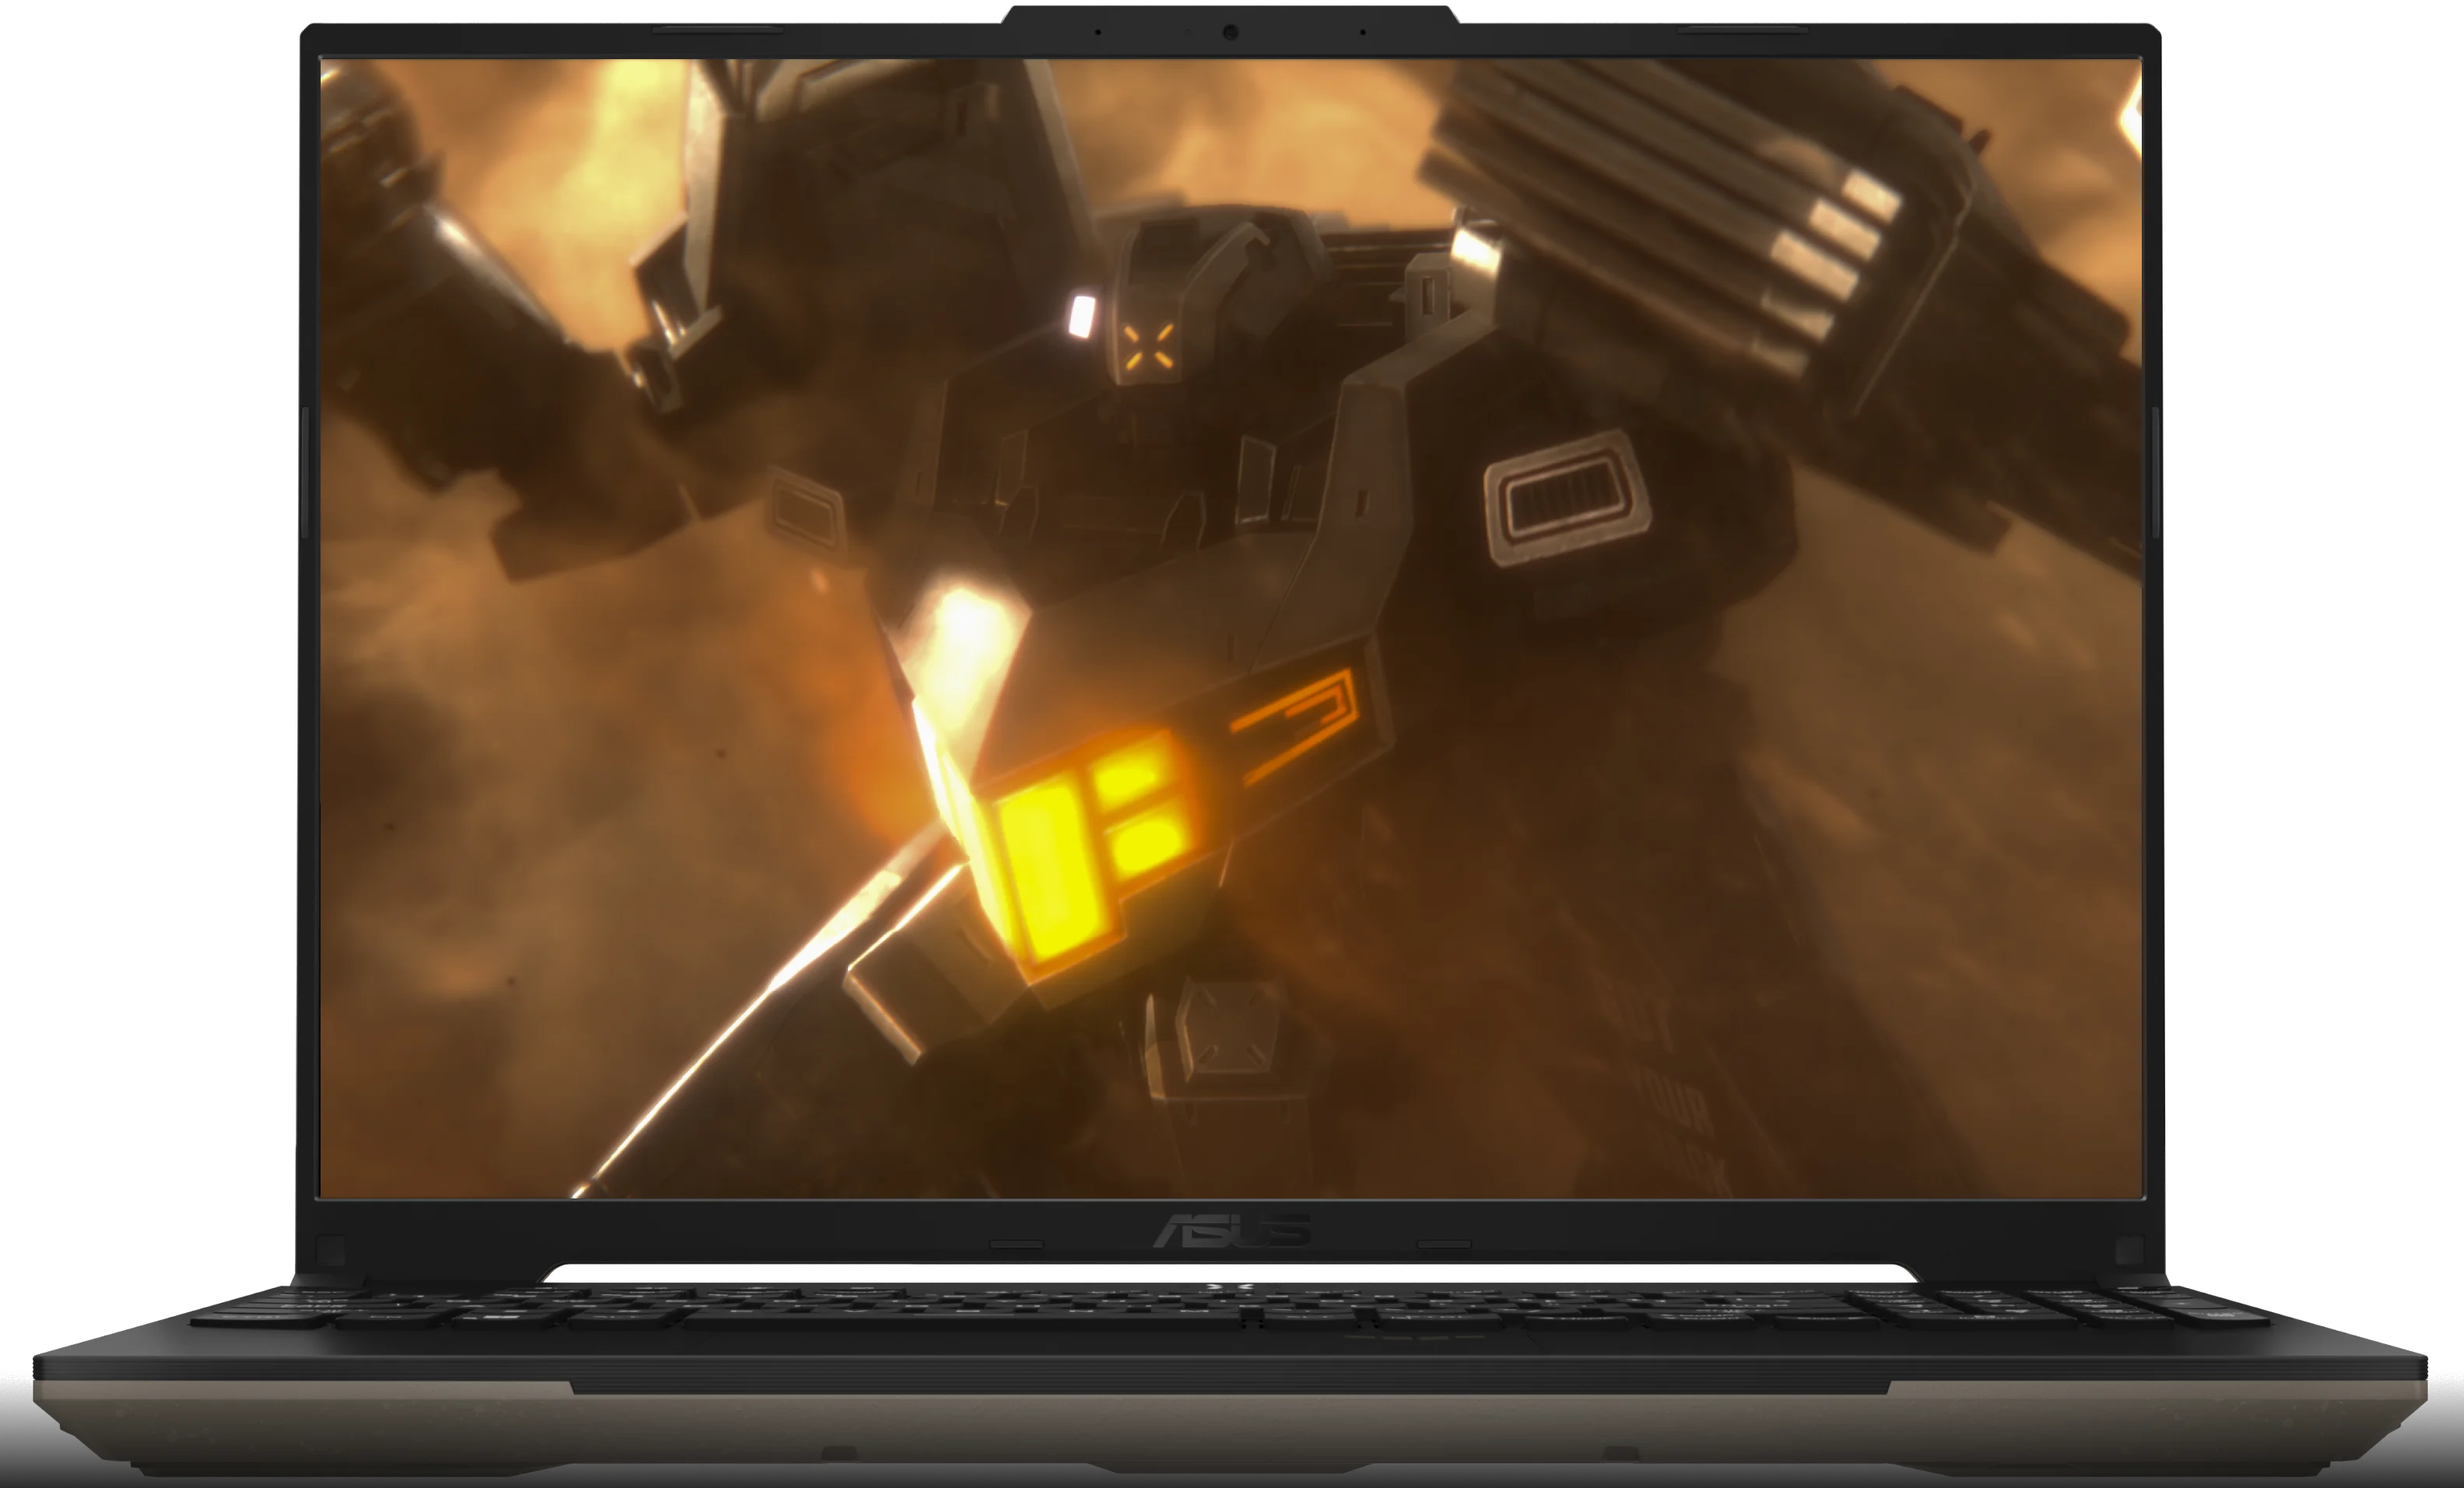 منظر للجهاز TUF Gaming A16 والغطاء مفتوح ويظهر Futuristic Mech على الشاشة.